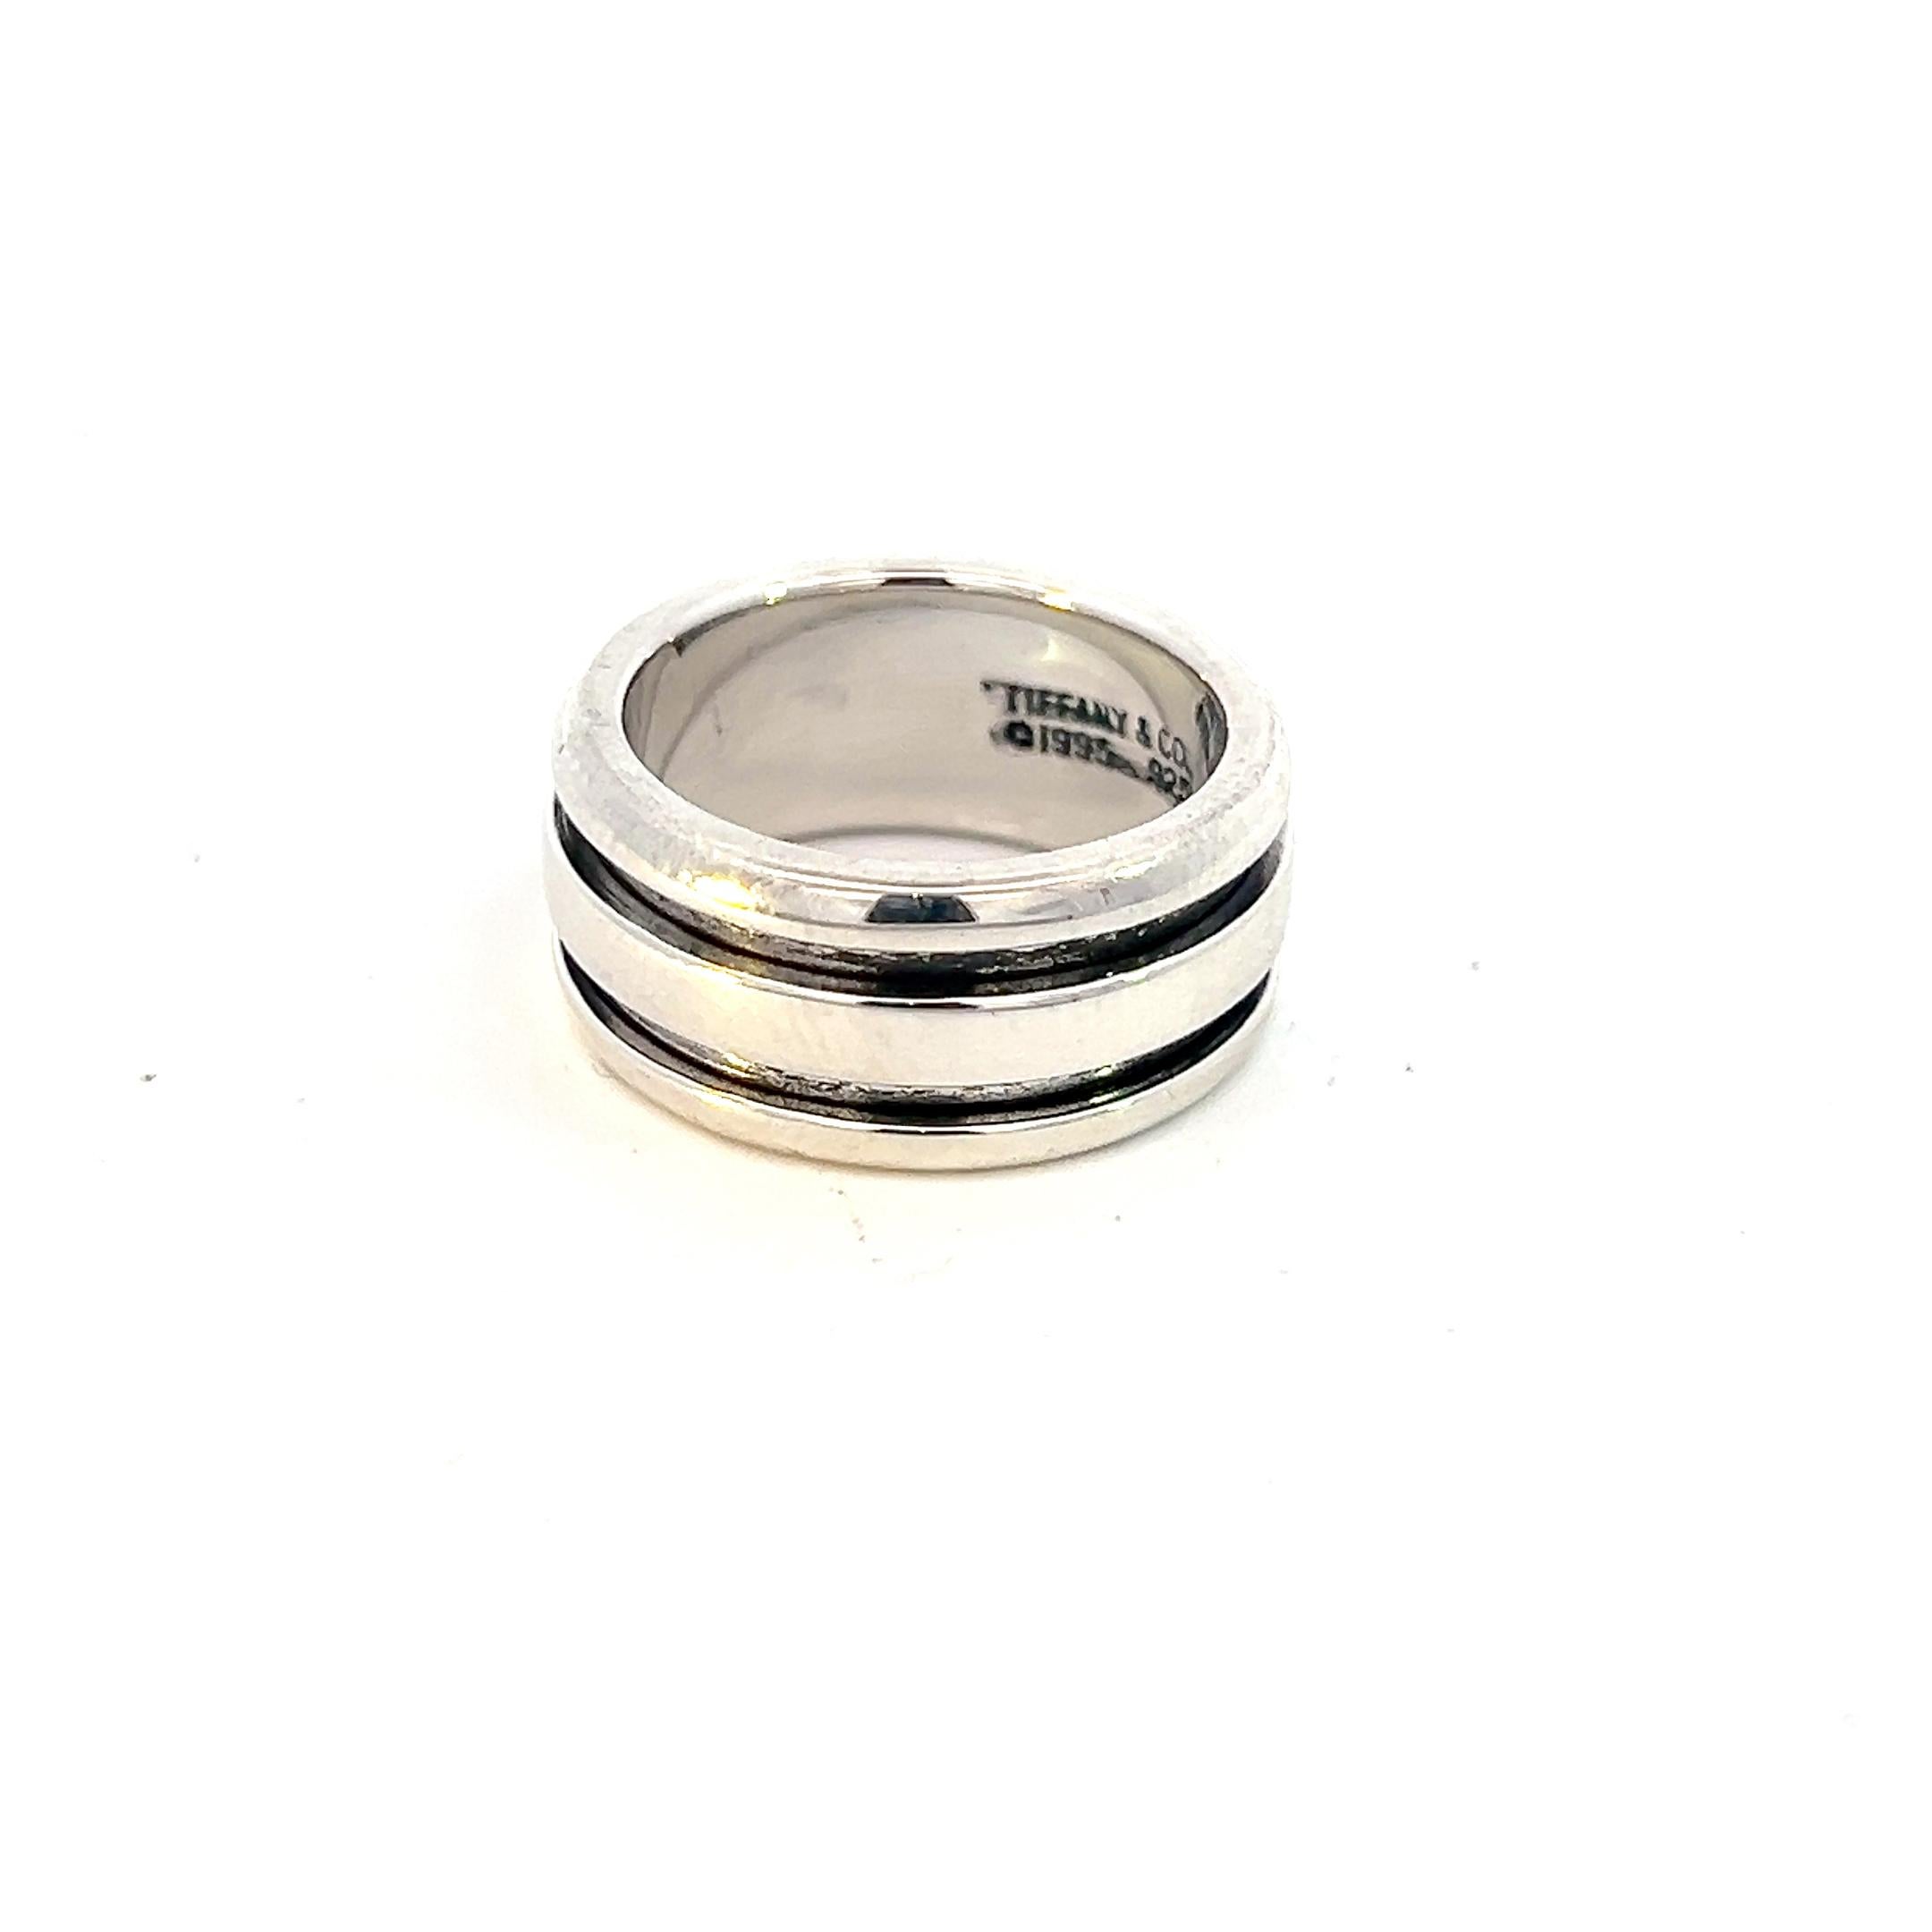 Authentische Tiffany & Co Estate Atlas Groove Ring Größe 6 Silber 9 mm TIF633

Dieser elegante Authentic Tiffany & Co Atlas Groove Ring ist aus Sterlingsilber gefertigt.

VERTRAUENSWÜRDIGER VERKÄUFER SEIT 2002

DETAILS
Stil: Atlas-Nutring
Ringgröße: